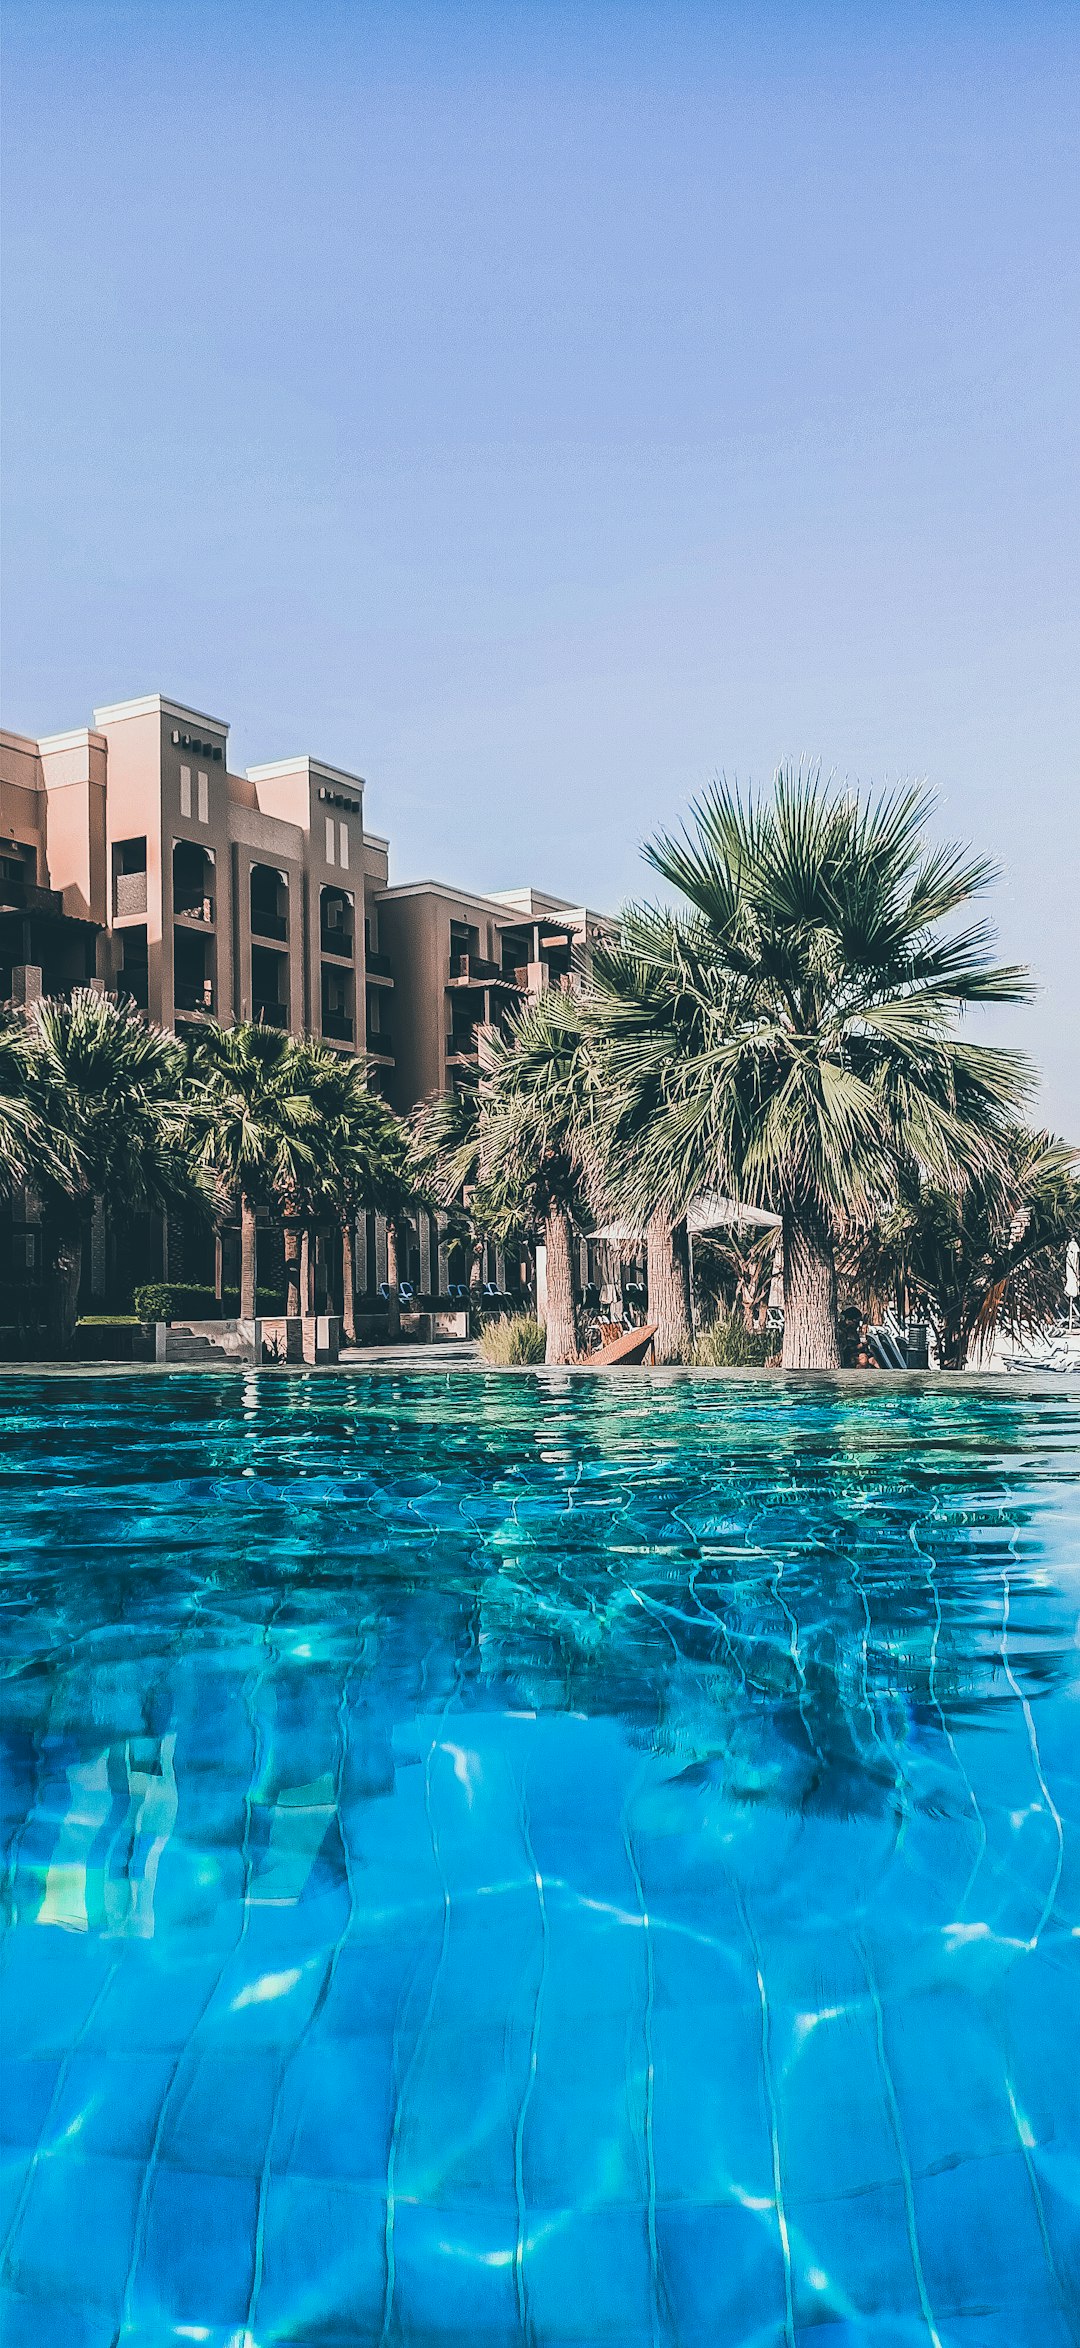 Resort photo spot Ras Al-Khaimah - Ras al Khaimah - United Arab Emirates Sharjah